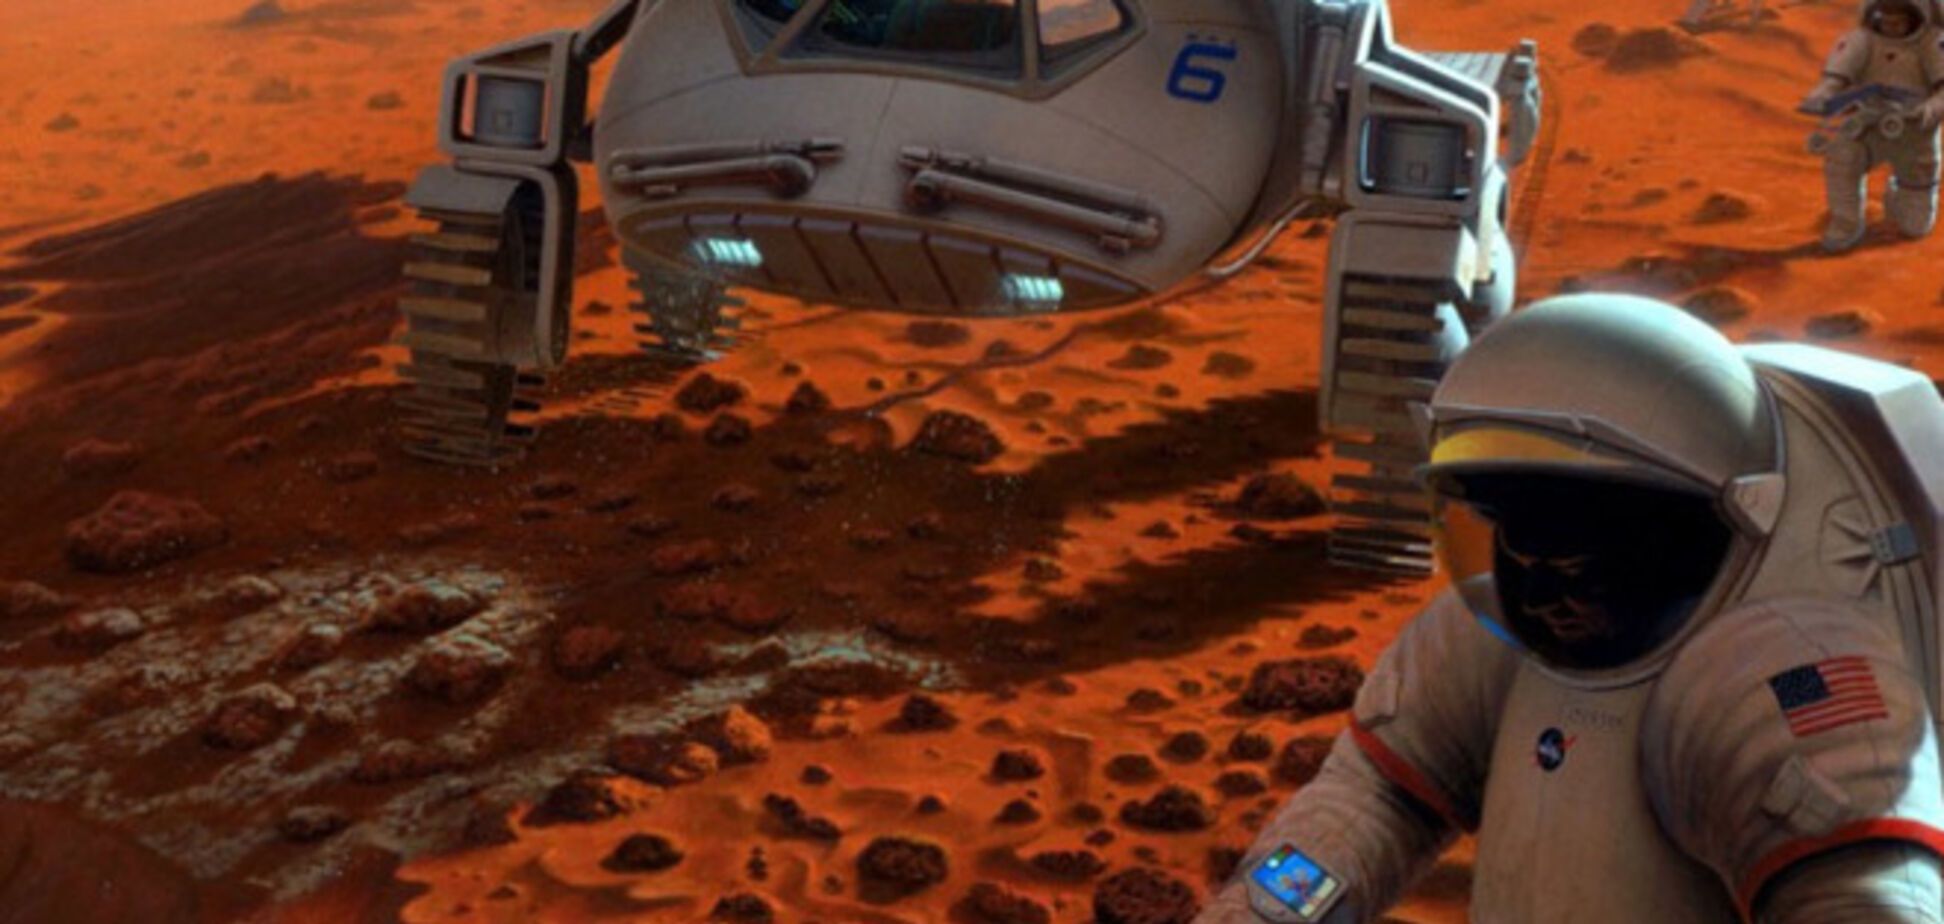 Будущим поселенцам Марса для выживания придется пить мочу